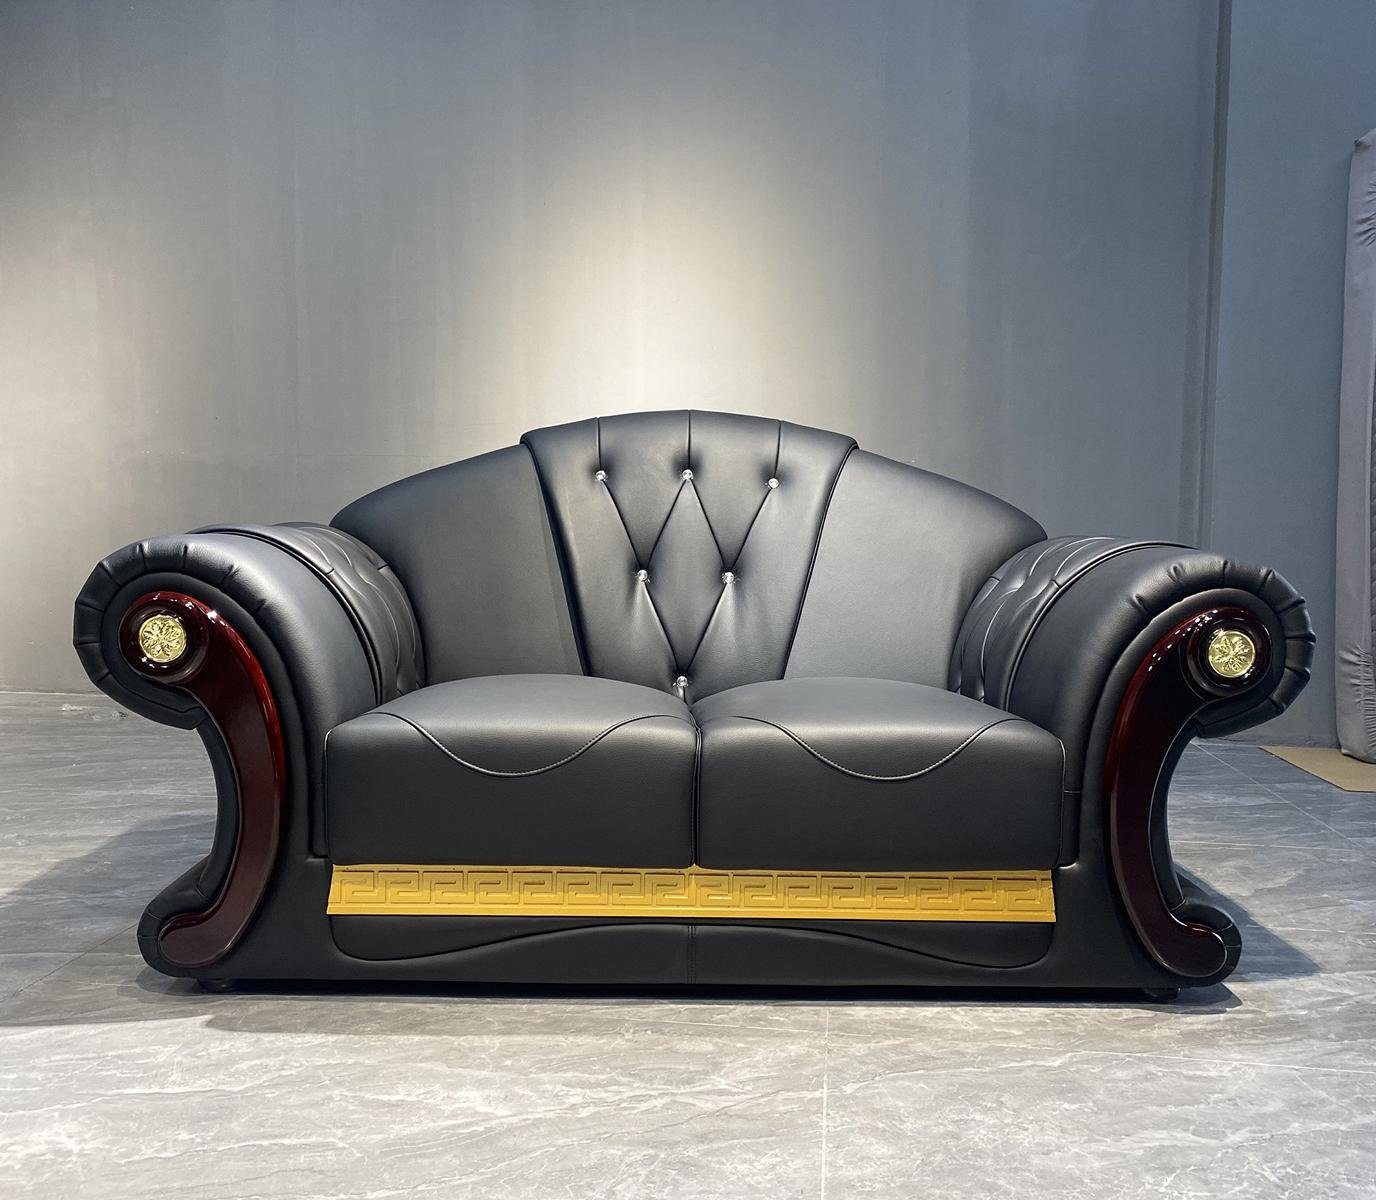 Europe Klassische Sofa, Möbel Design Zweisitzer JVmoebel Made Chesterfield Couch Sofa in